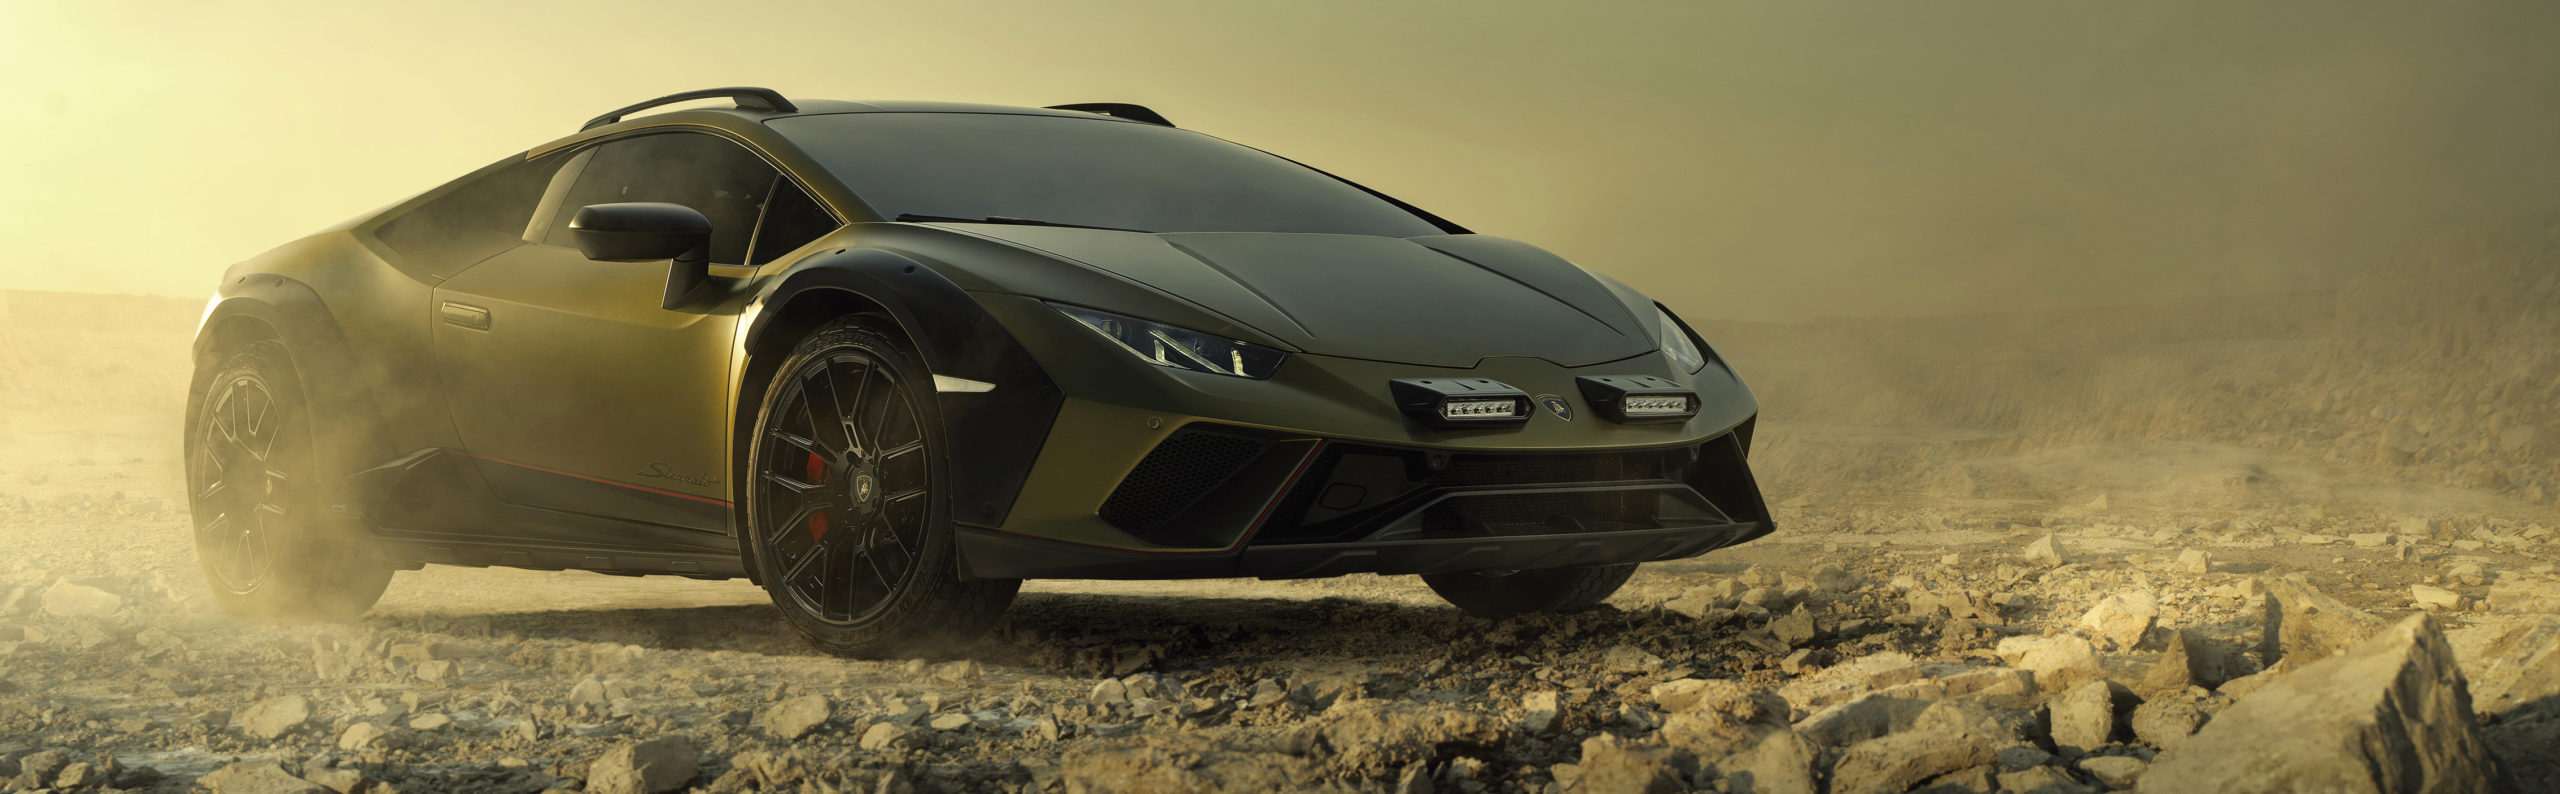 Nuevo Lamborghini Huracán Sterrato